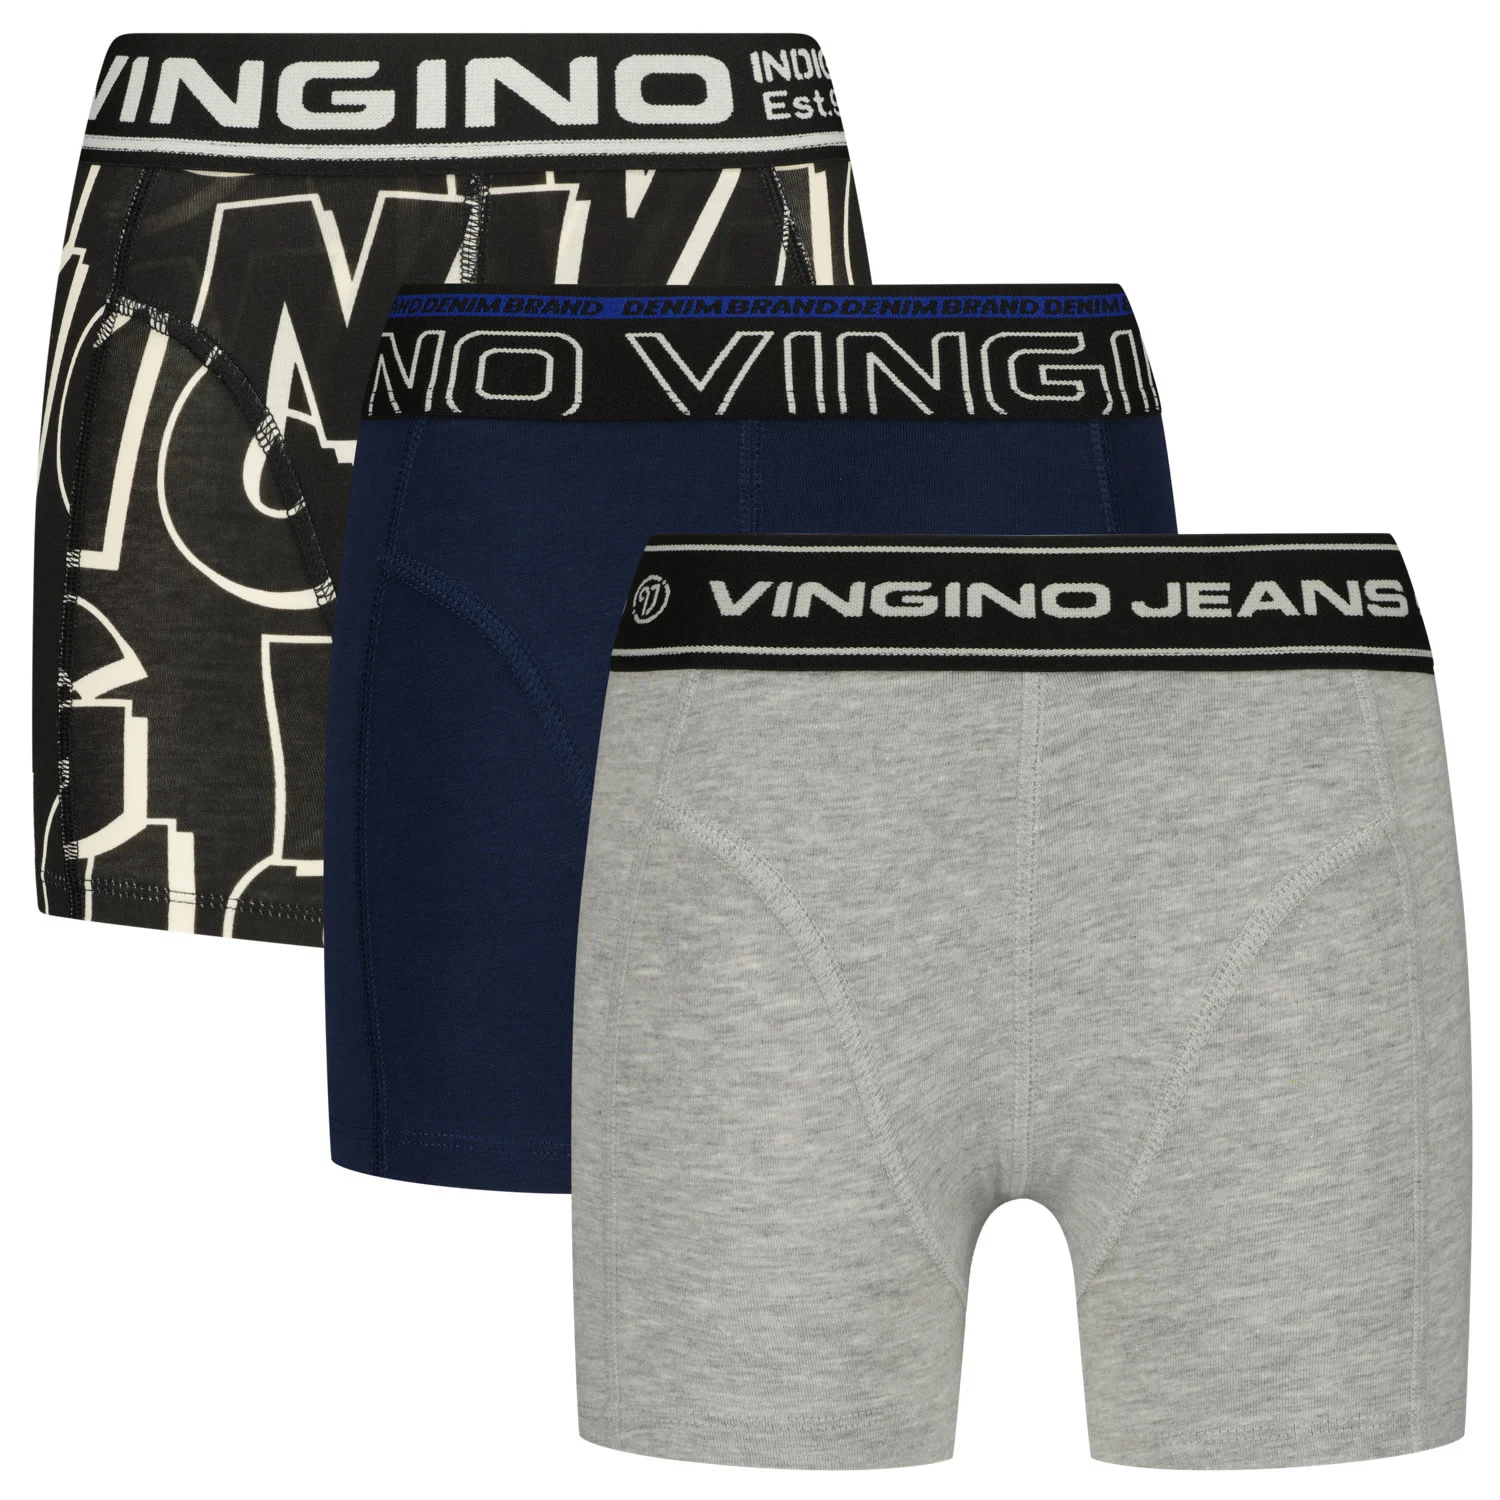 Afbeelding van Vingino Jongens ondergoed 3-pack boxers logo